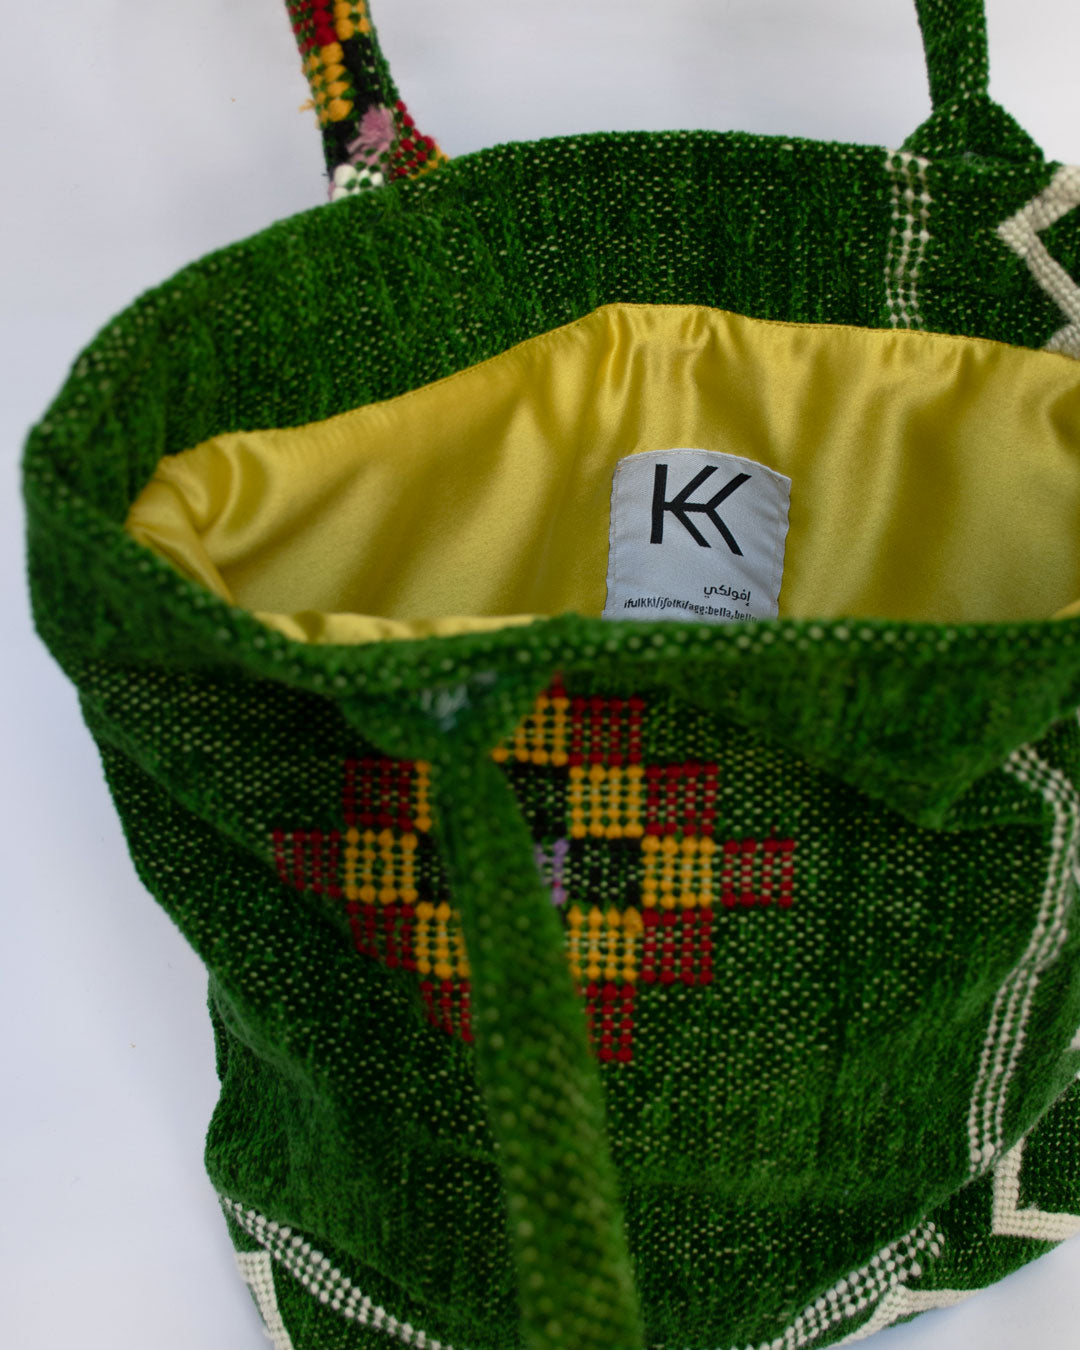 IFULKKI Tote bag green